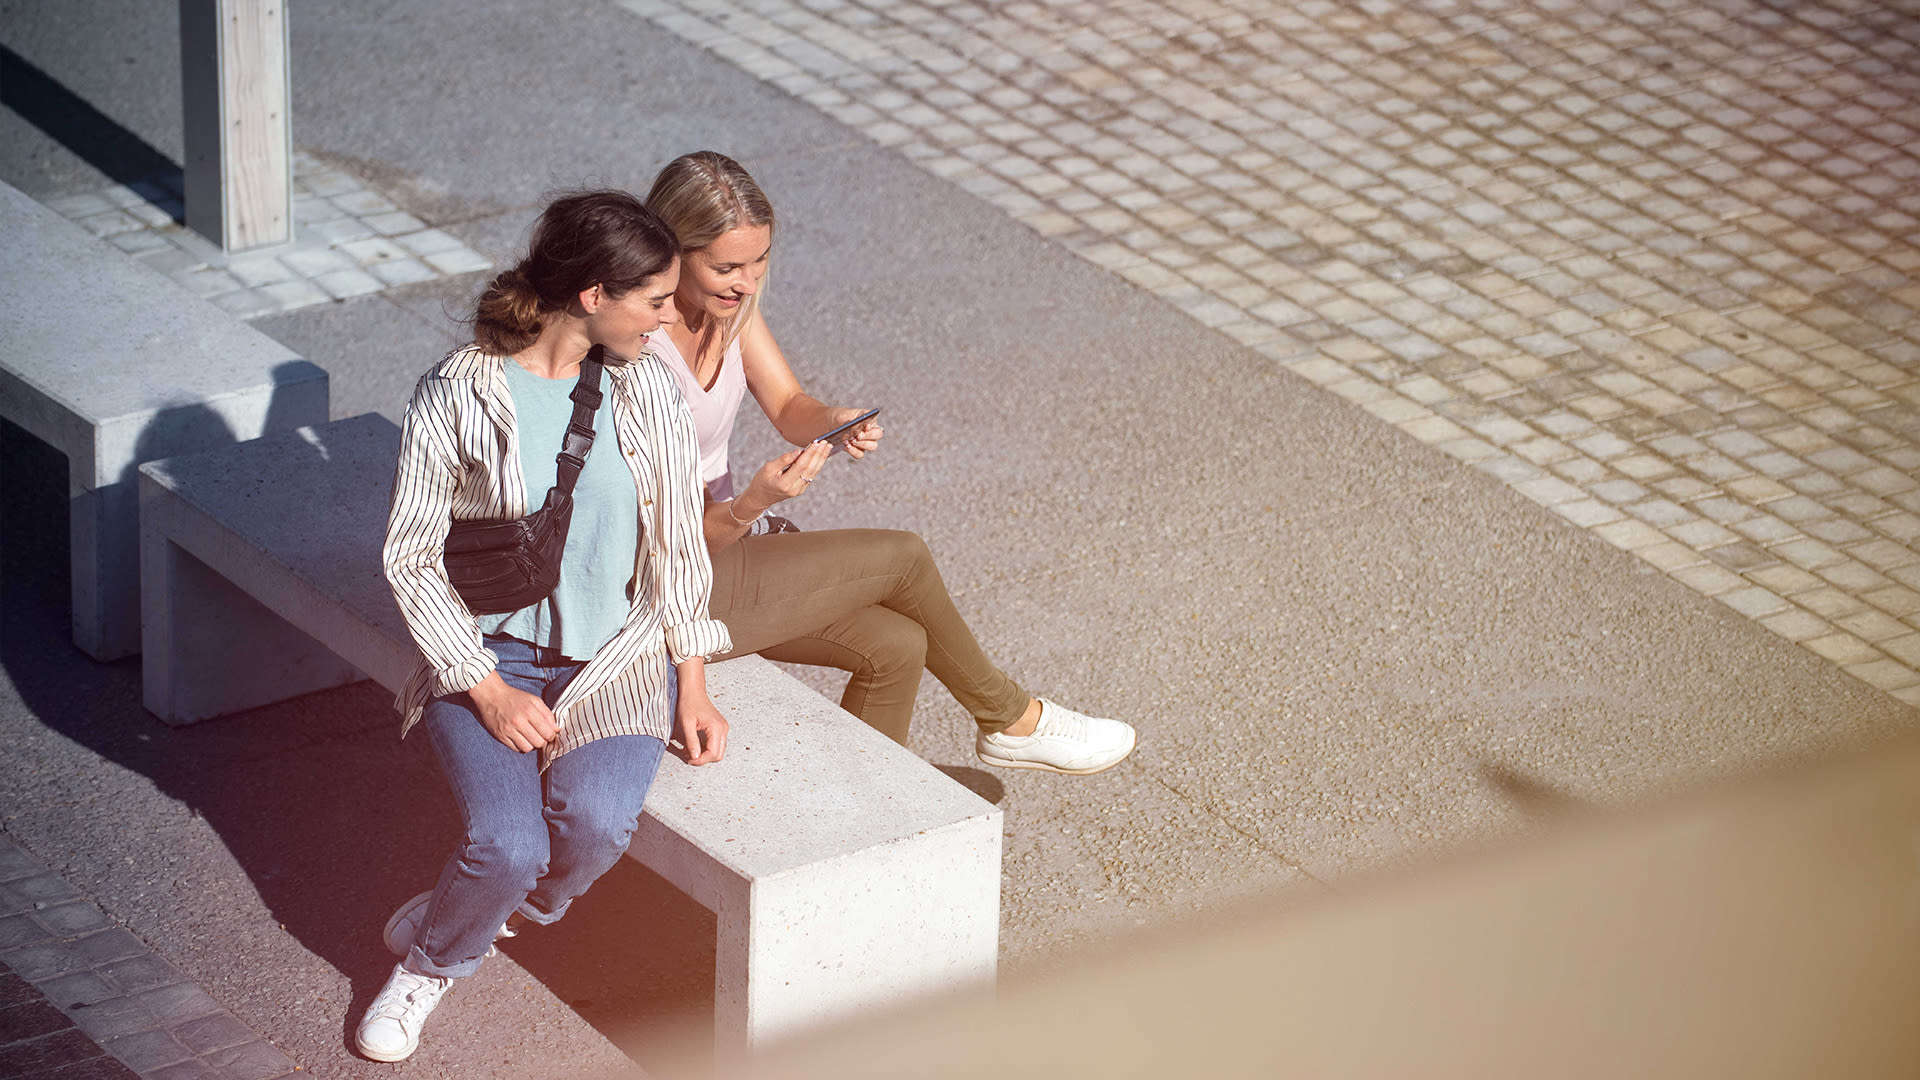 Två kvinnor sitter tillsammans på en grå betongbänk och samtalar. Den ena kvinnan visar den andra något på sin mobil.